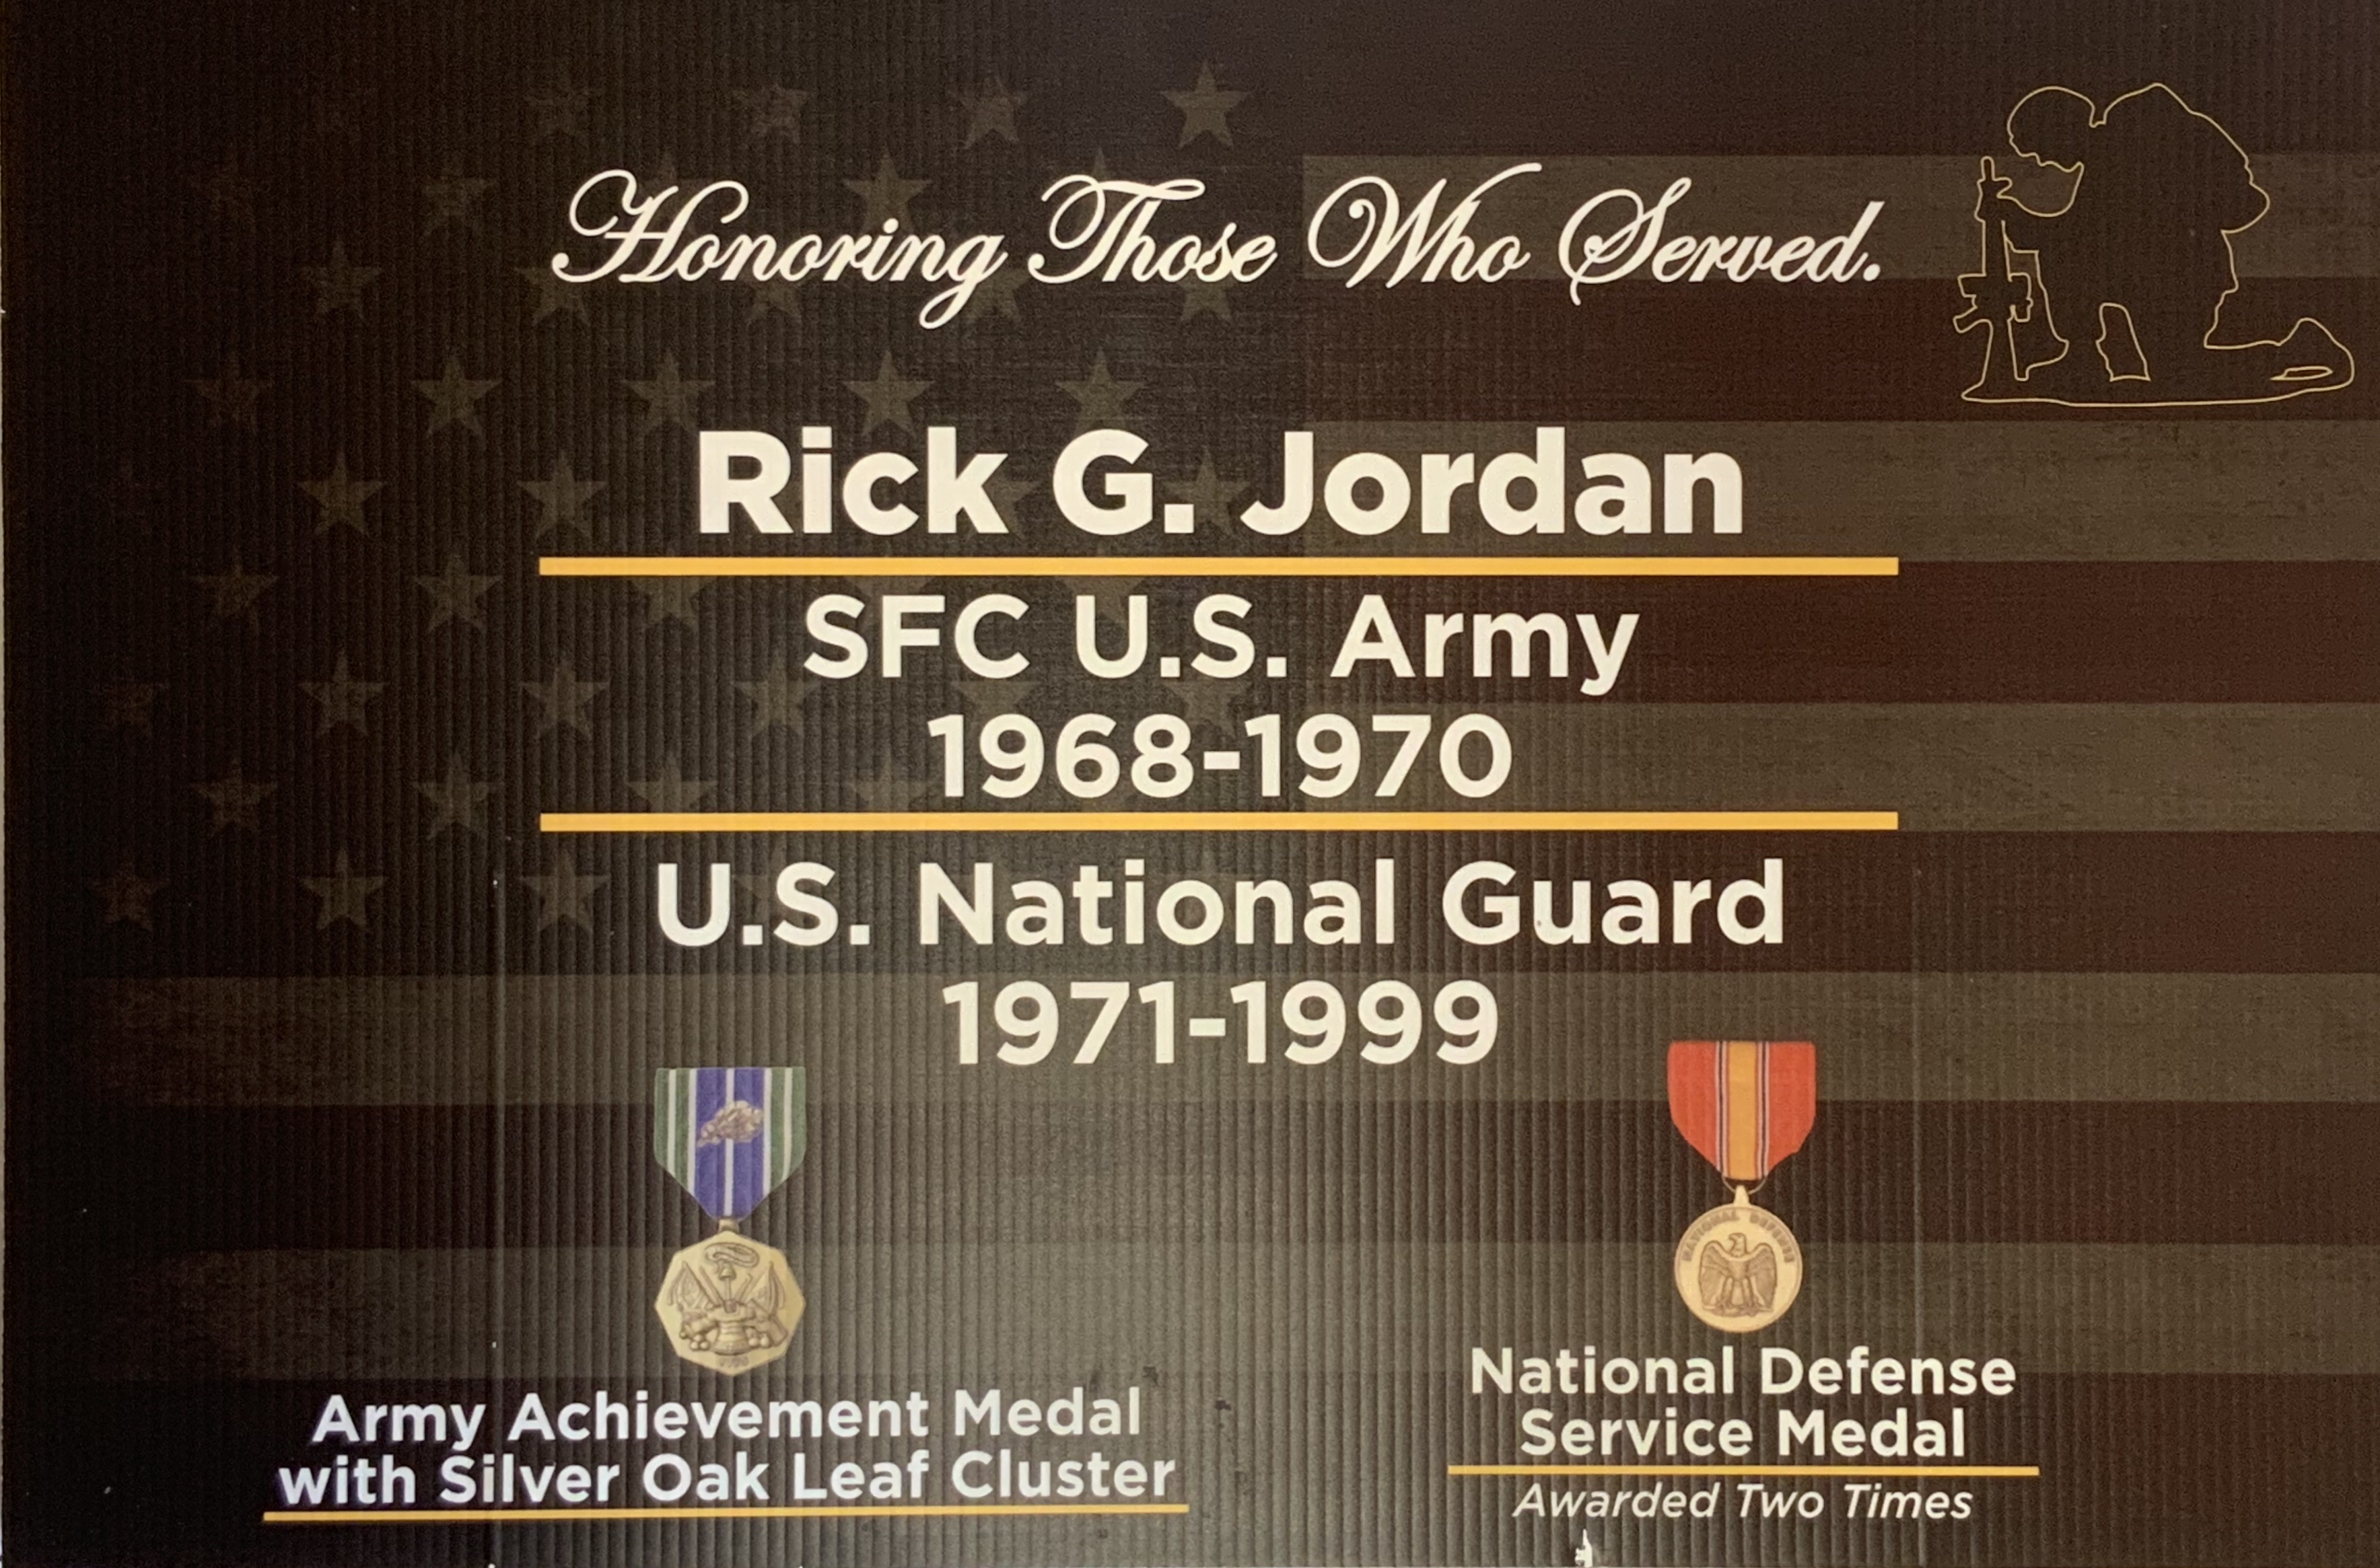 Rick Jordan